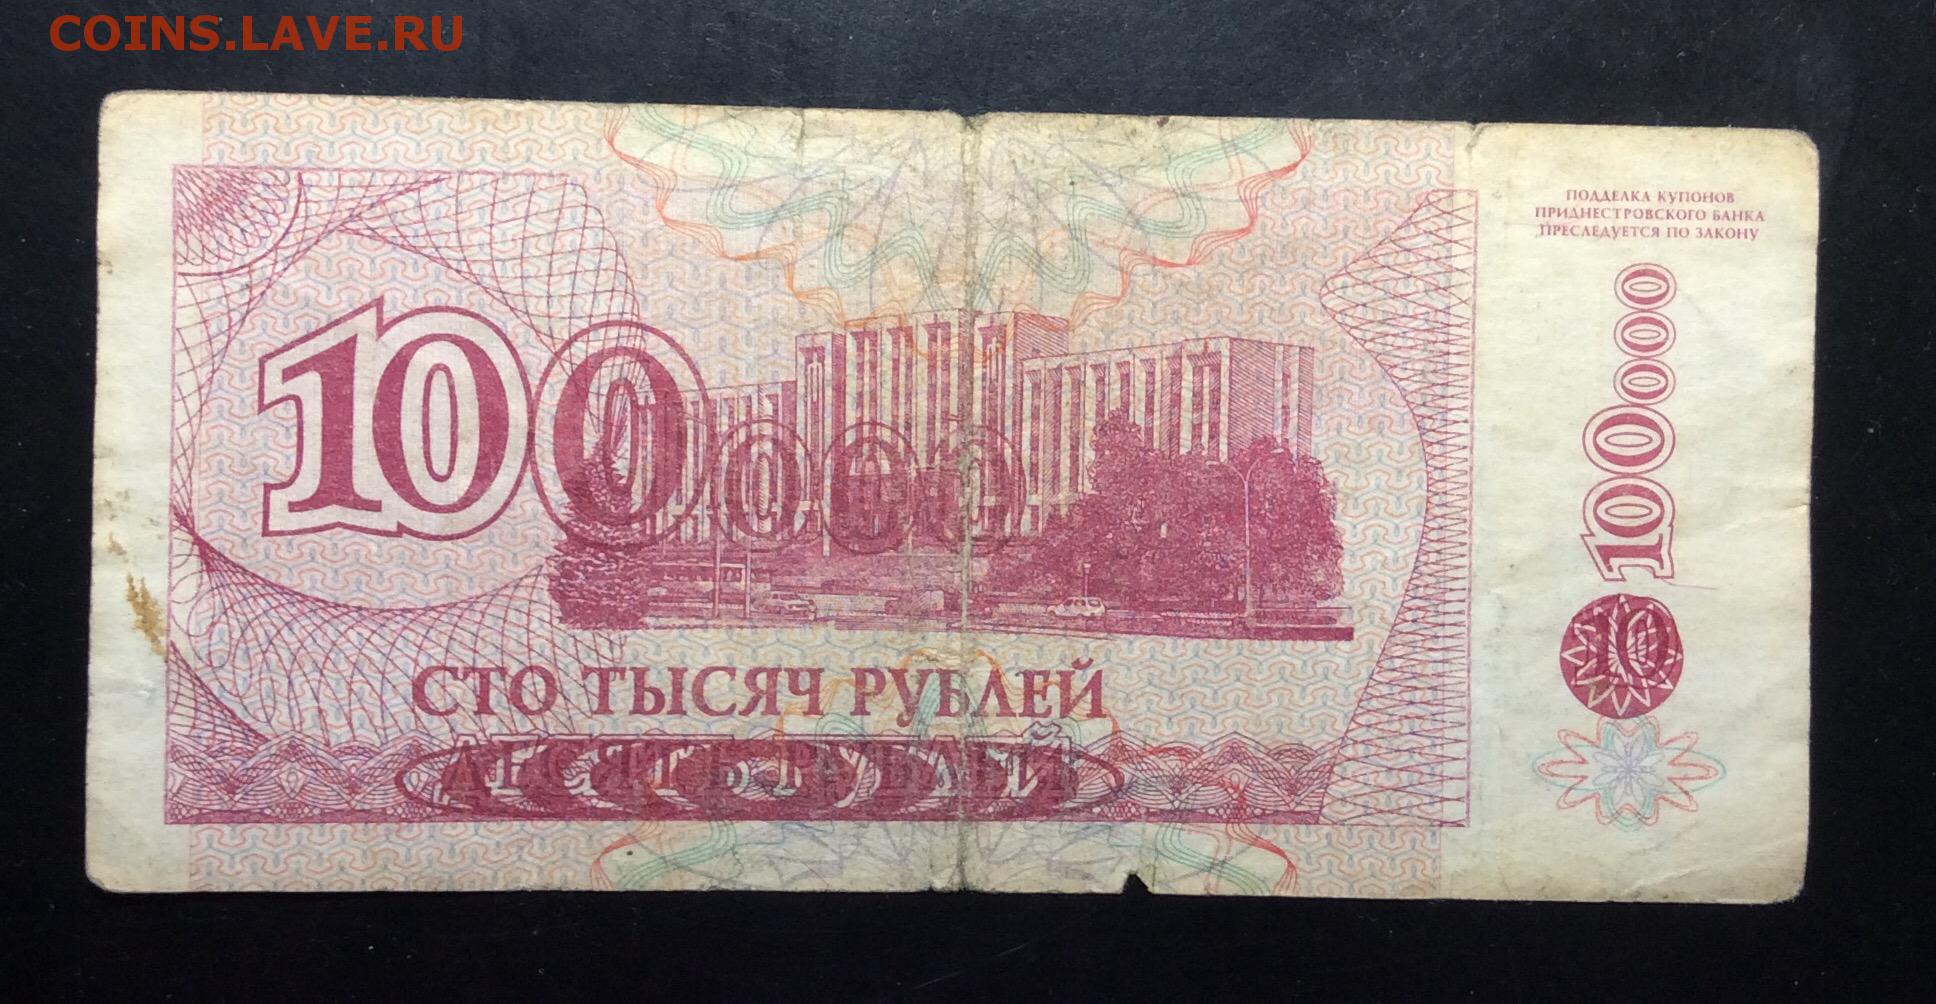 Сто пятьдесят девять рублей. Банкнота 10000 рублей. 10000 Рублей 1994 года. 10 000 Рублей бумажные. 10 Тысяч рублей бумажные.